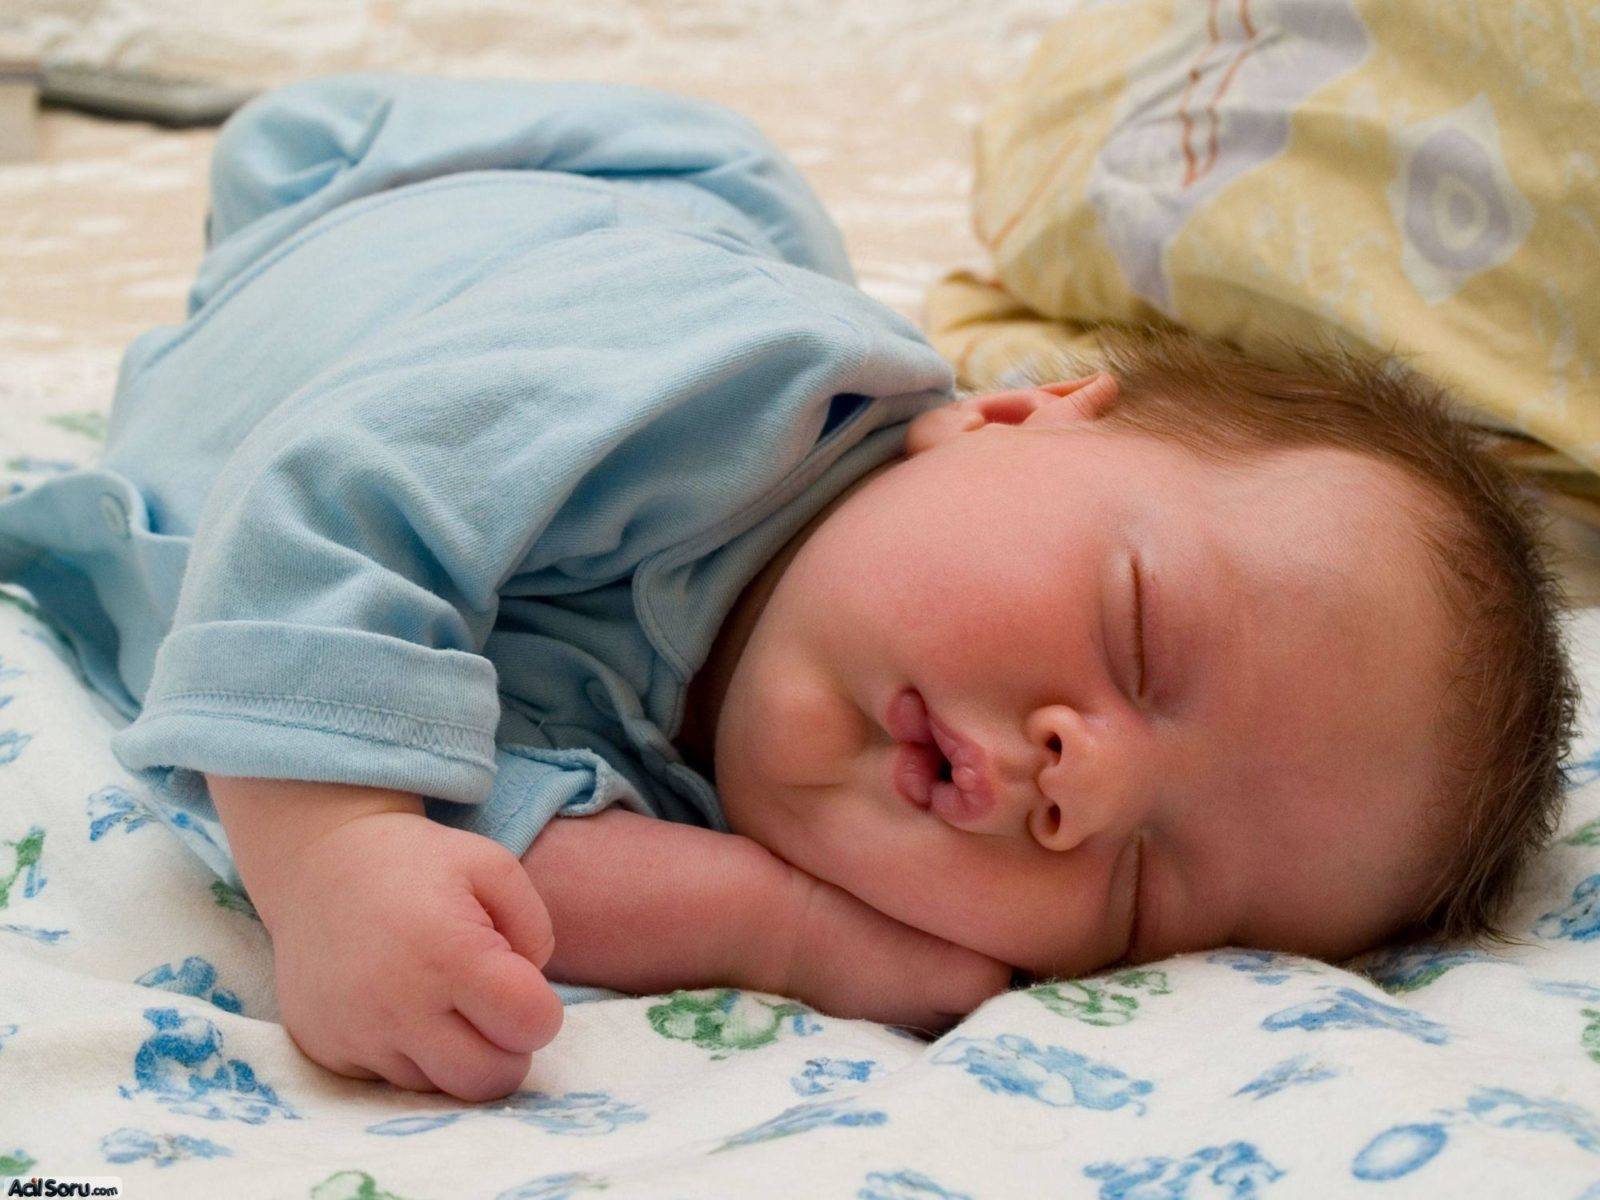 Как уложить новорожденного спать, чтобы малыш отдохнул, а мама не нервничала? как укладывать новорожденных: секреты - автор екатерина данилова - журнал женское мнение